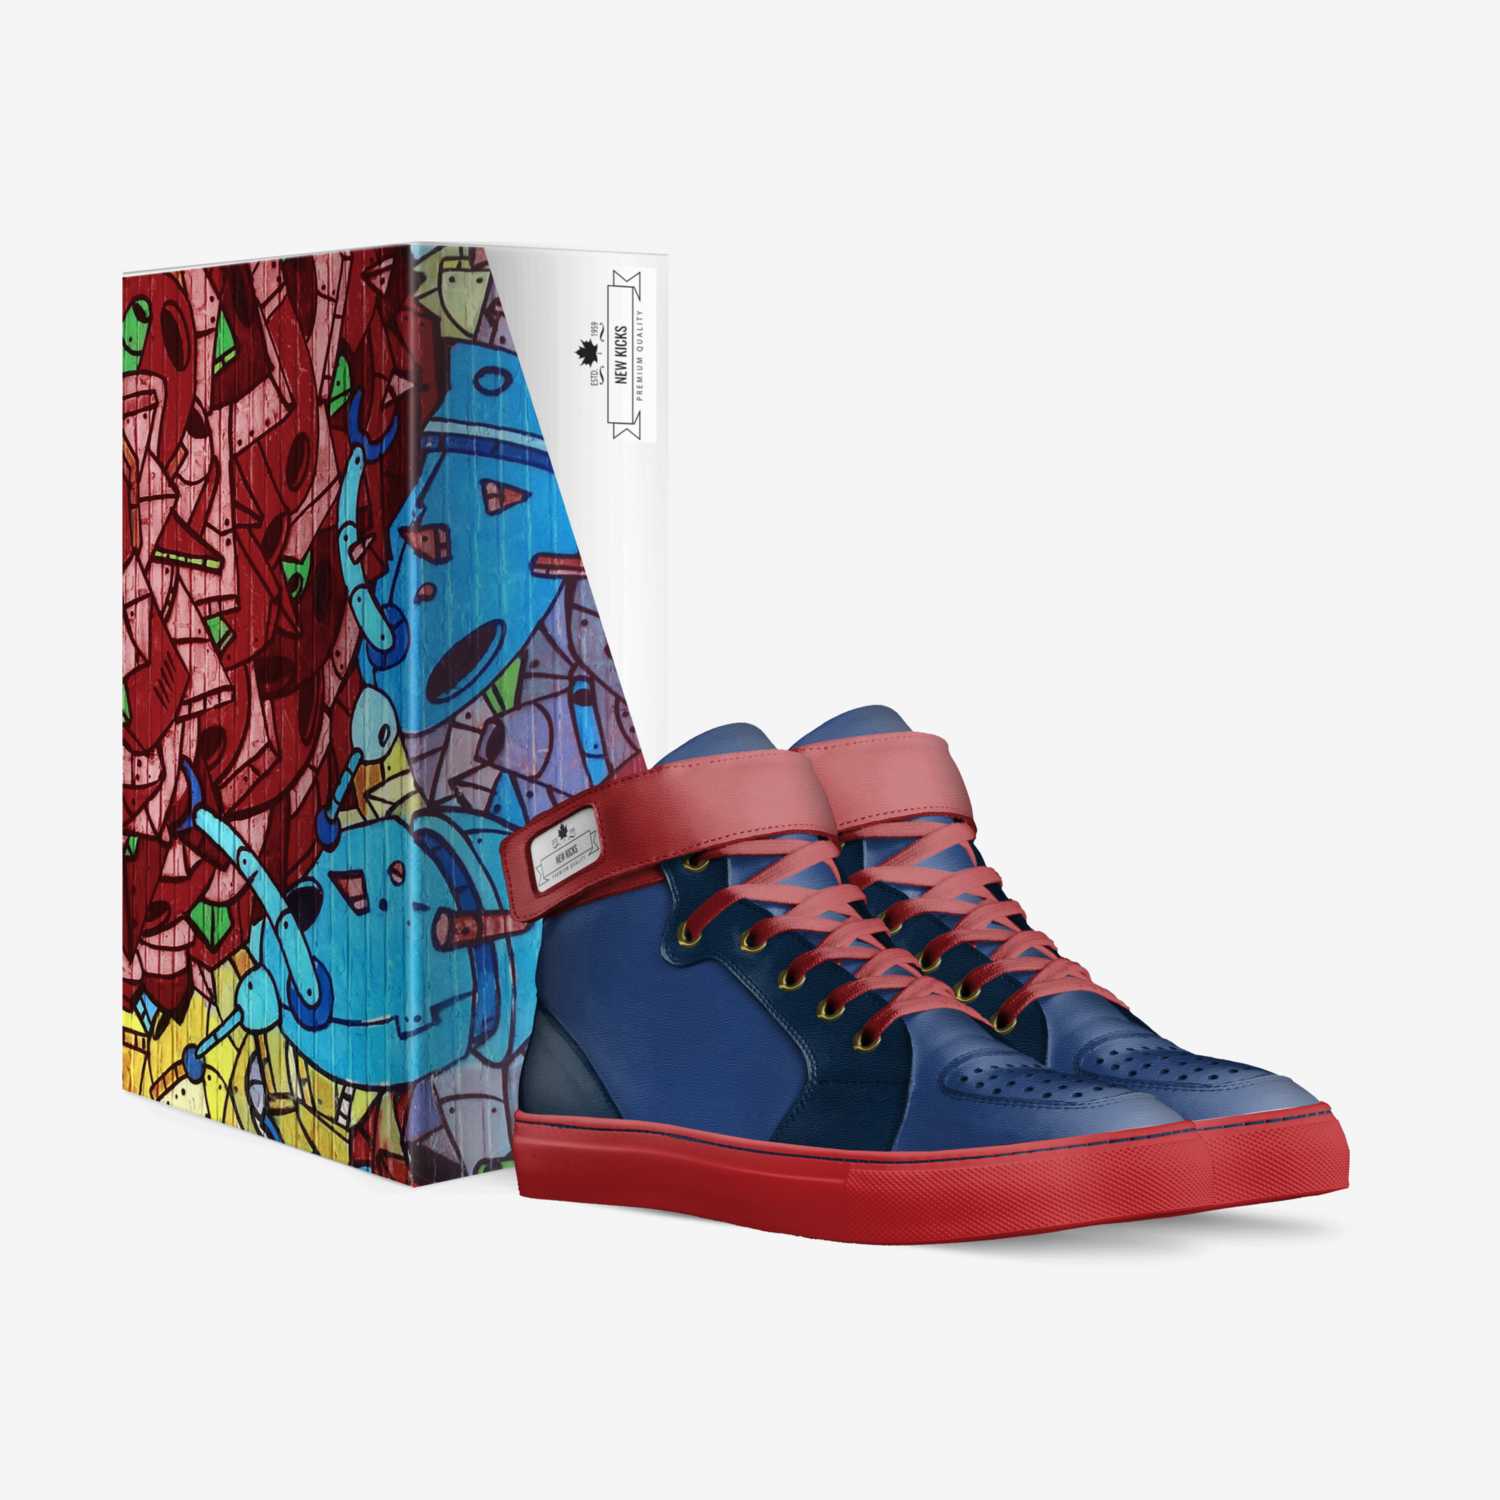 New kicks custom made in Italy shoes by Jaden Landry Harris | Box view